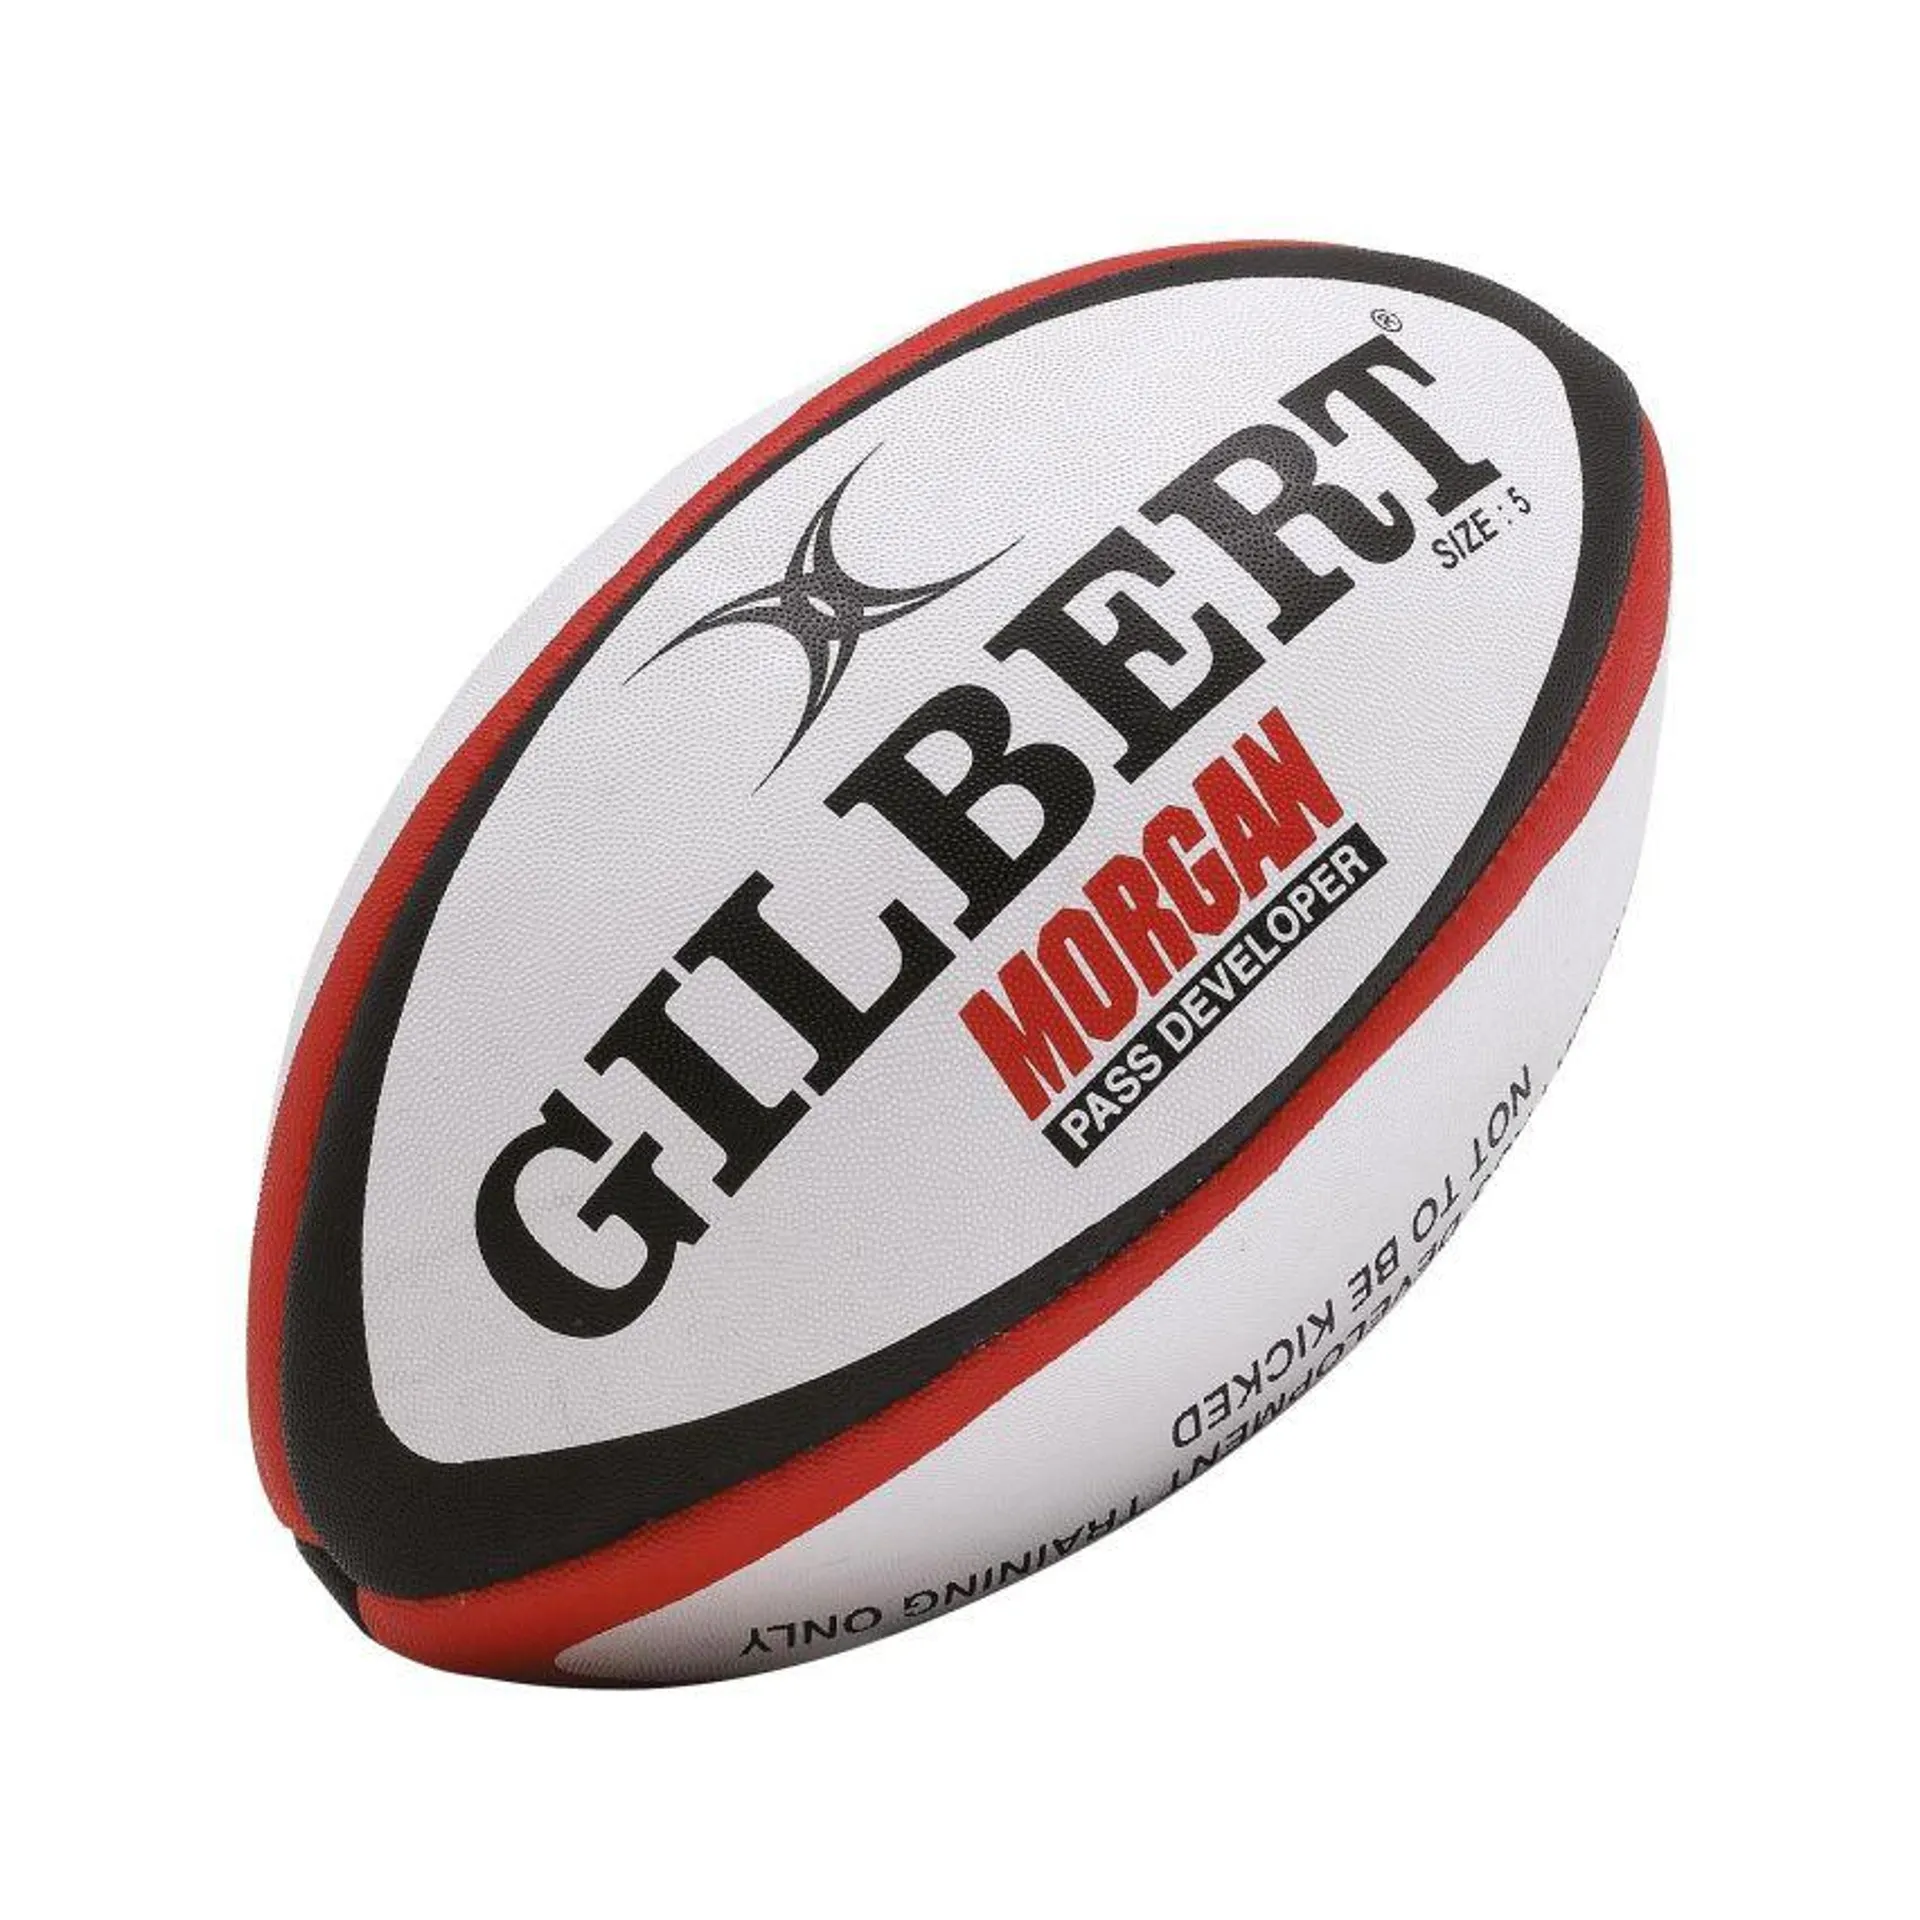 Ballon Rugby Lesté Morgan Taille 4 - Gilbert